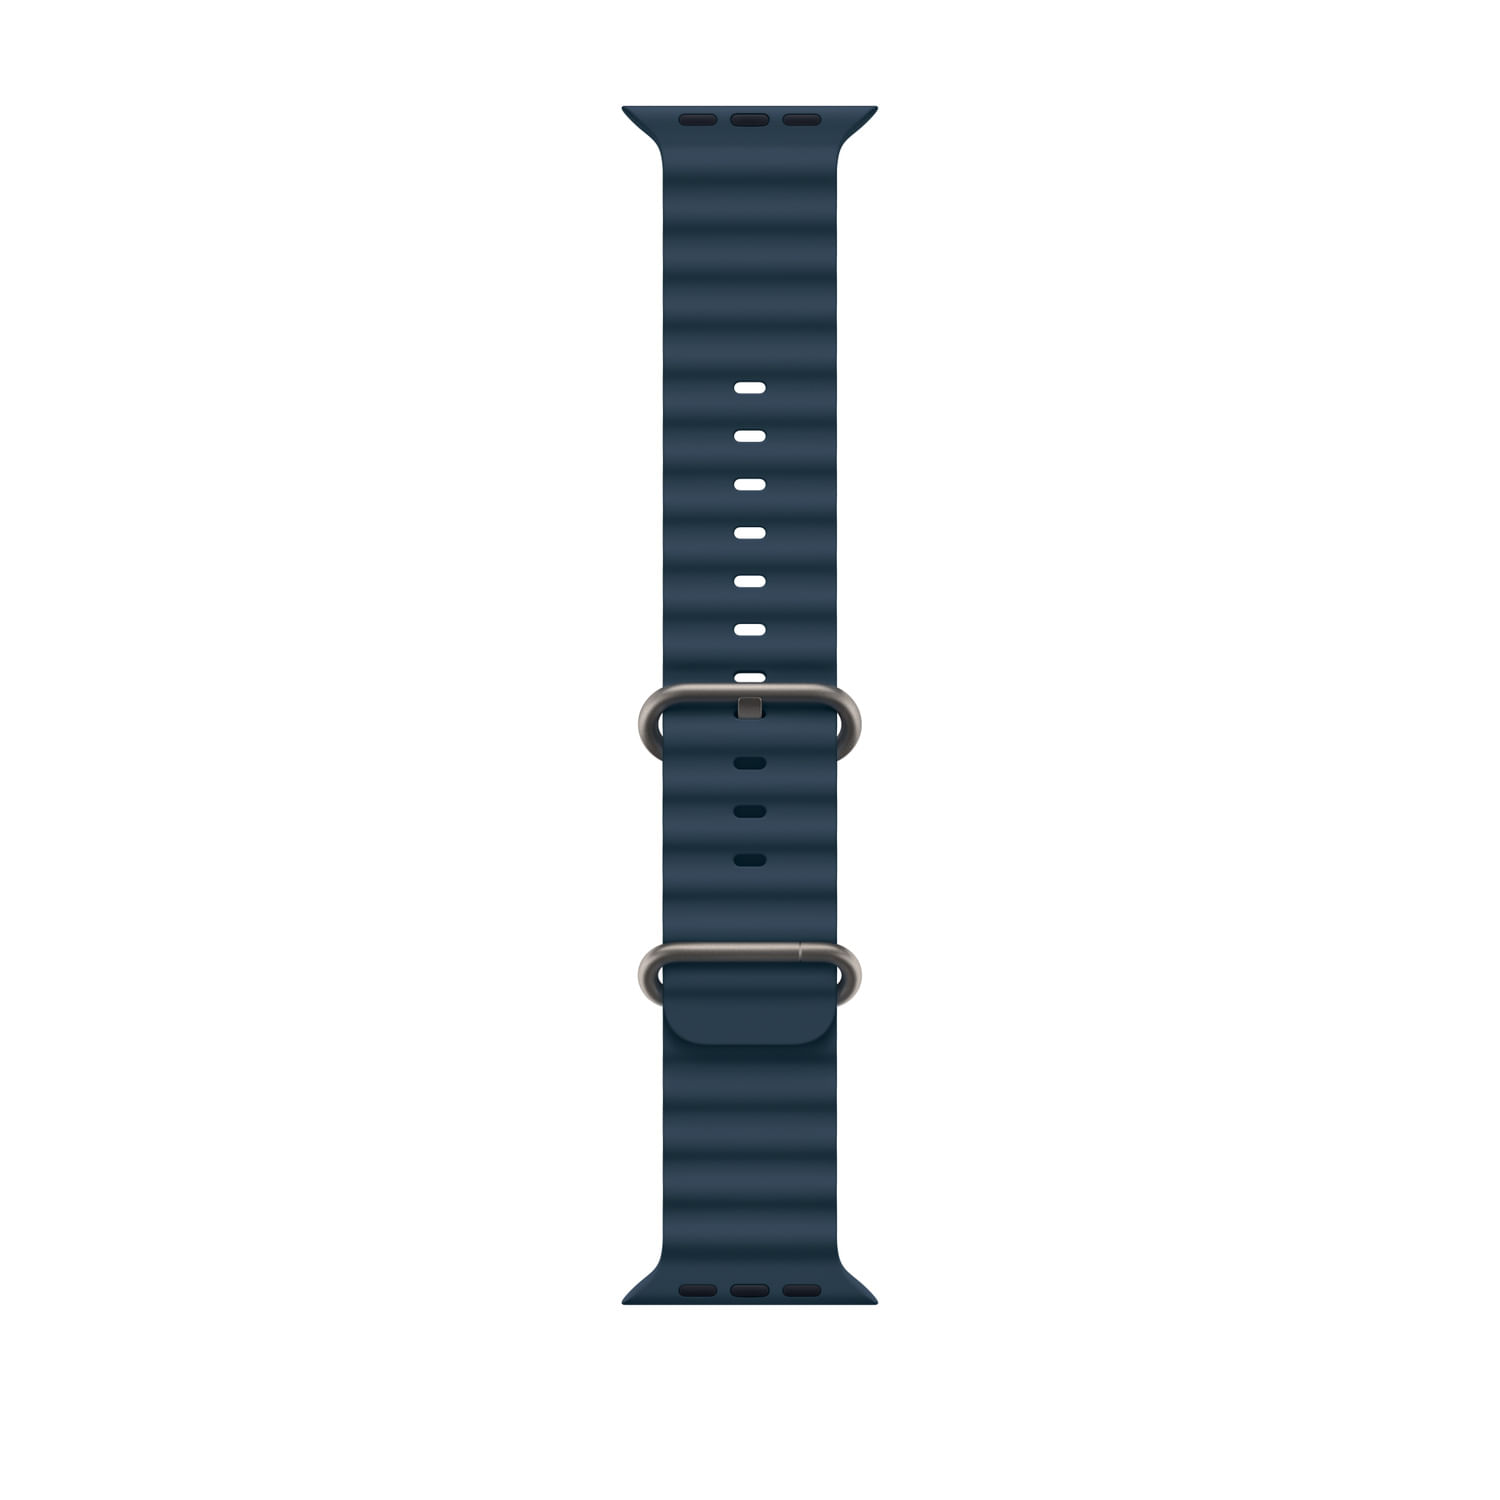 Correa Pulso Banda de Metal Magnética para reloj Smartwatch Apple Iwatch  serie 1, 2, 3 (42mm) Color Negro/Gris